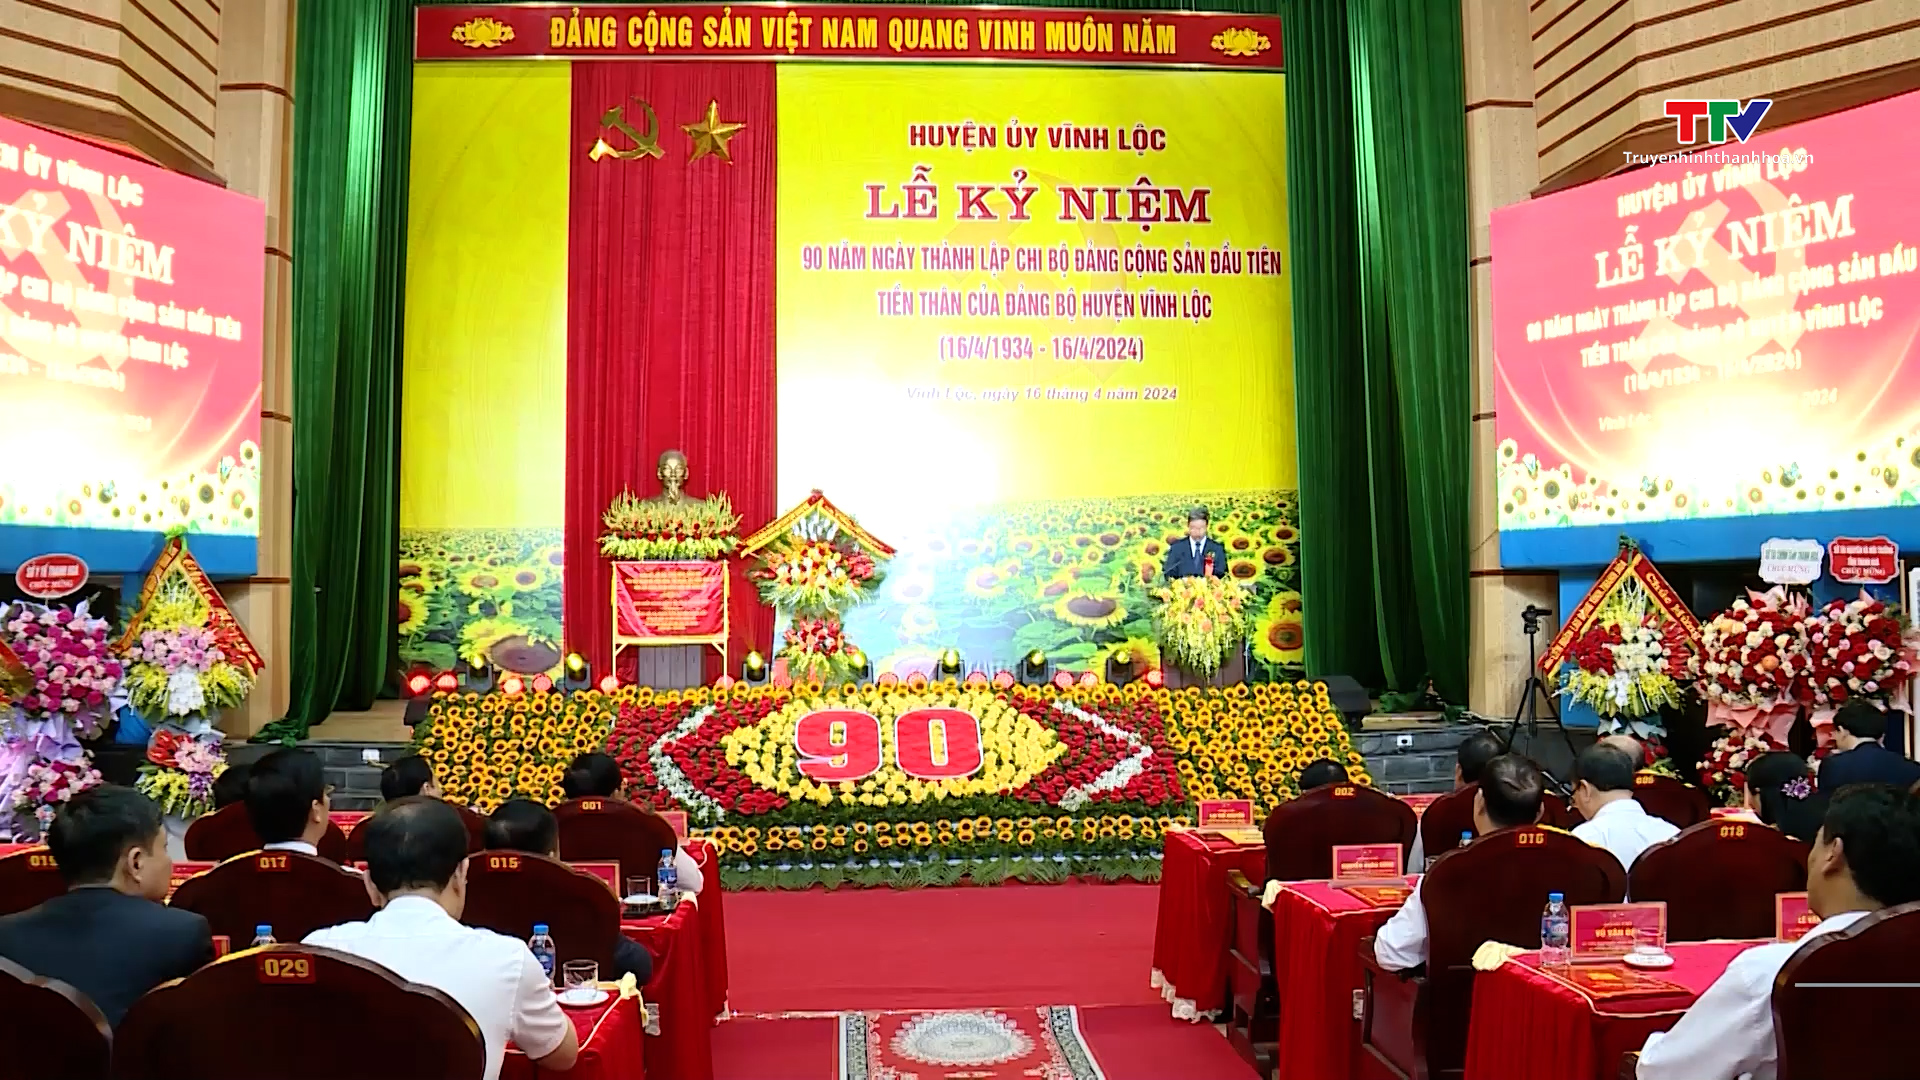 Kỷ niệm 90 năm ngày thành lập Chi bộ Đảng Cộng sản đầu tiên của huyện Vĩnh Lộc- Ảnh 1.